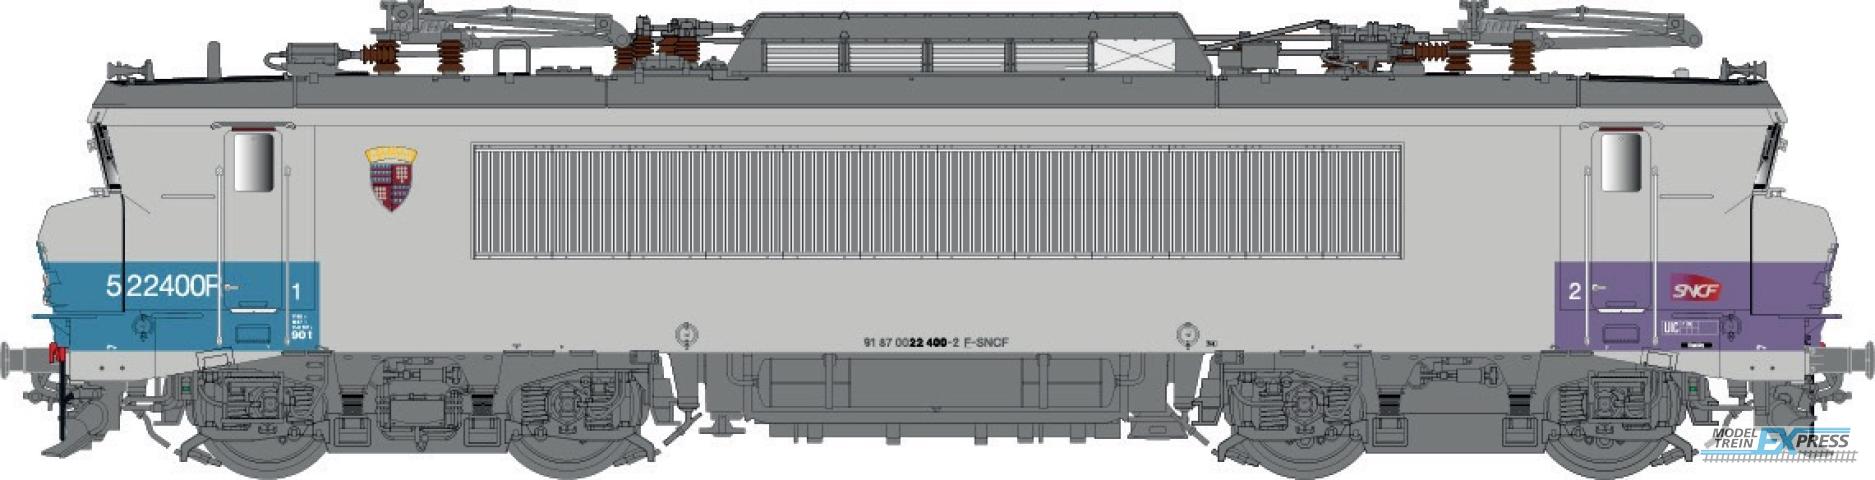 LS Models 11557S BB22400R, gris/bleu  /  Ep. VI  /  SNCF  /  HO  /  AC SOUND  /  1 P.